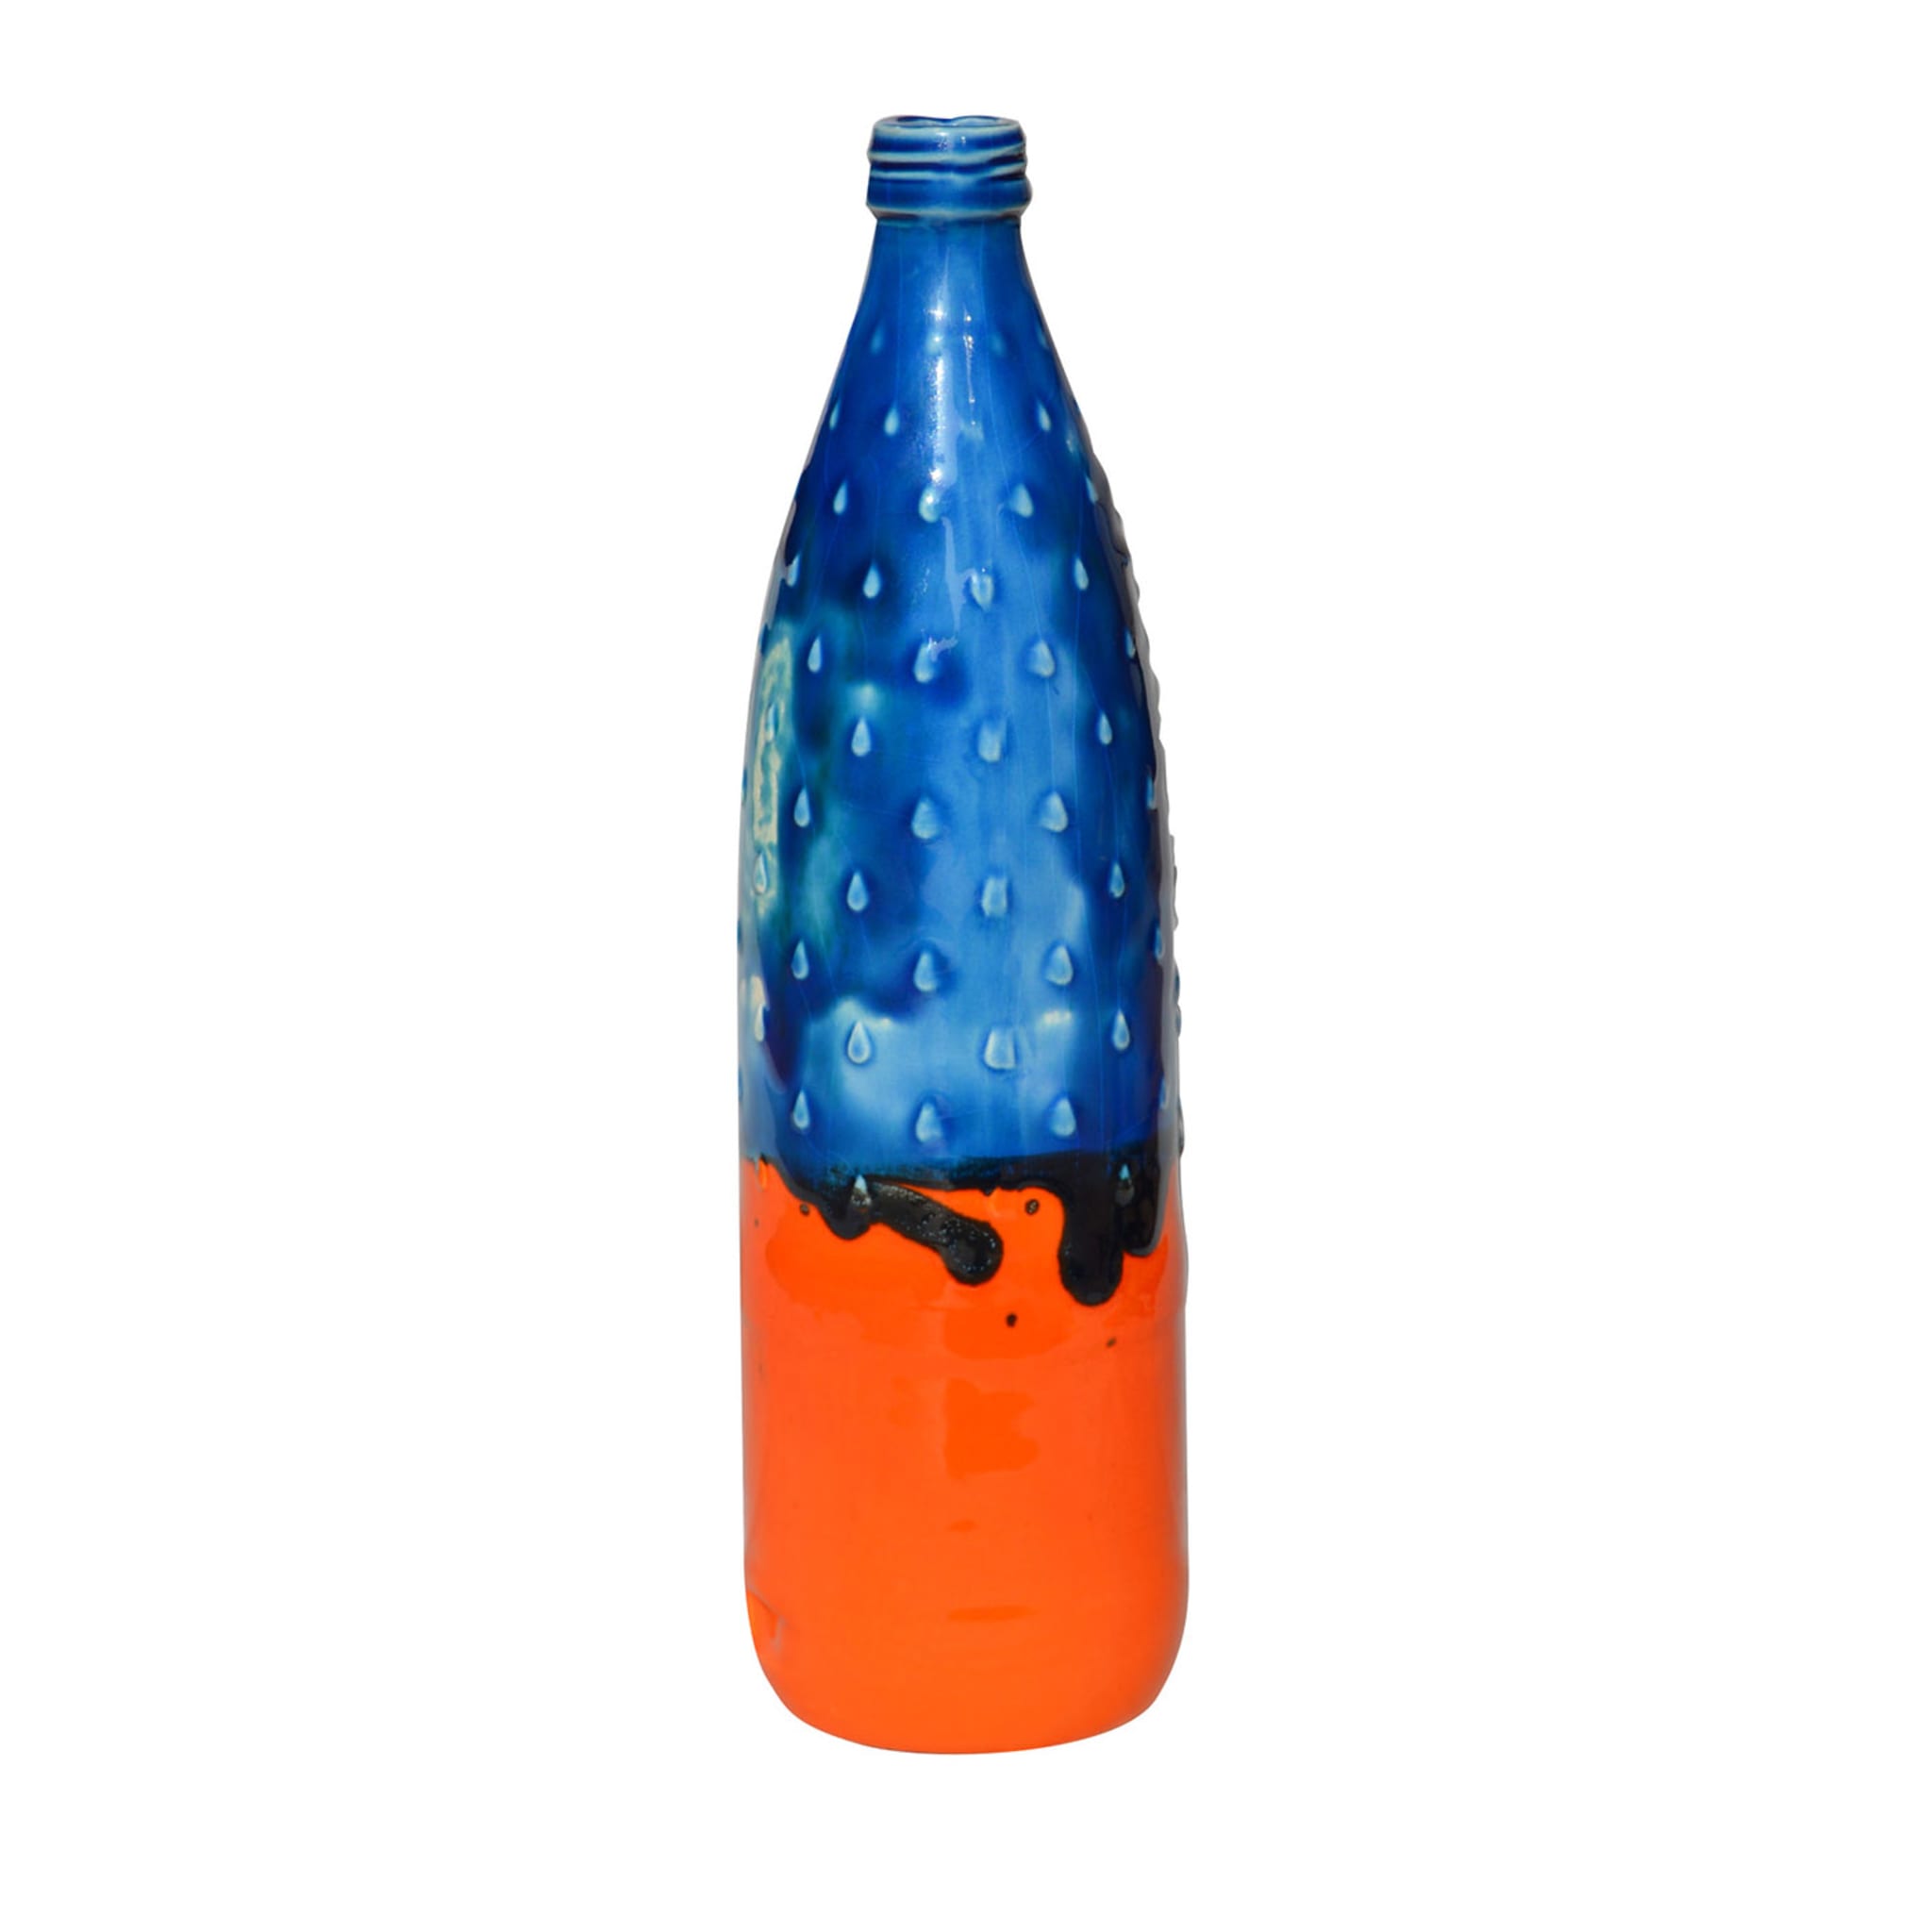 Più argilla meno plastica Bottiglia blu e arancione - Vista principale